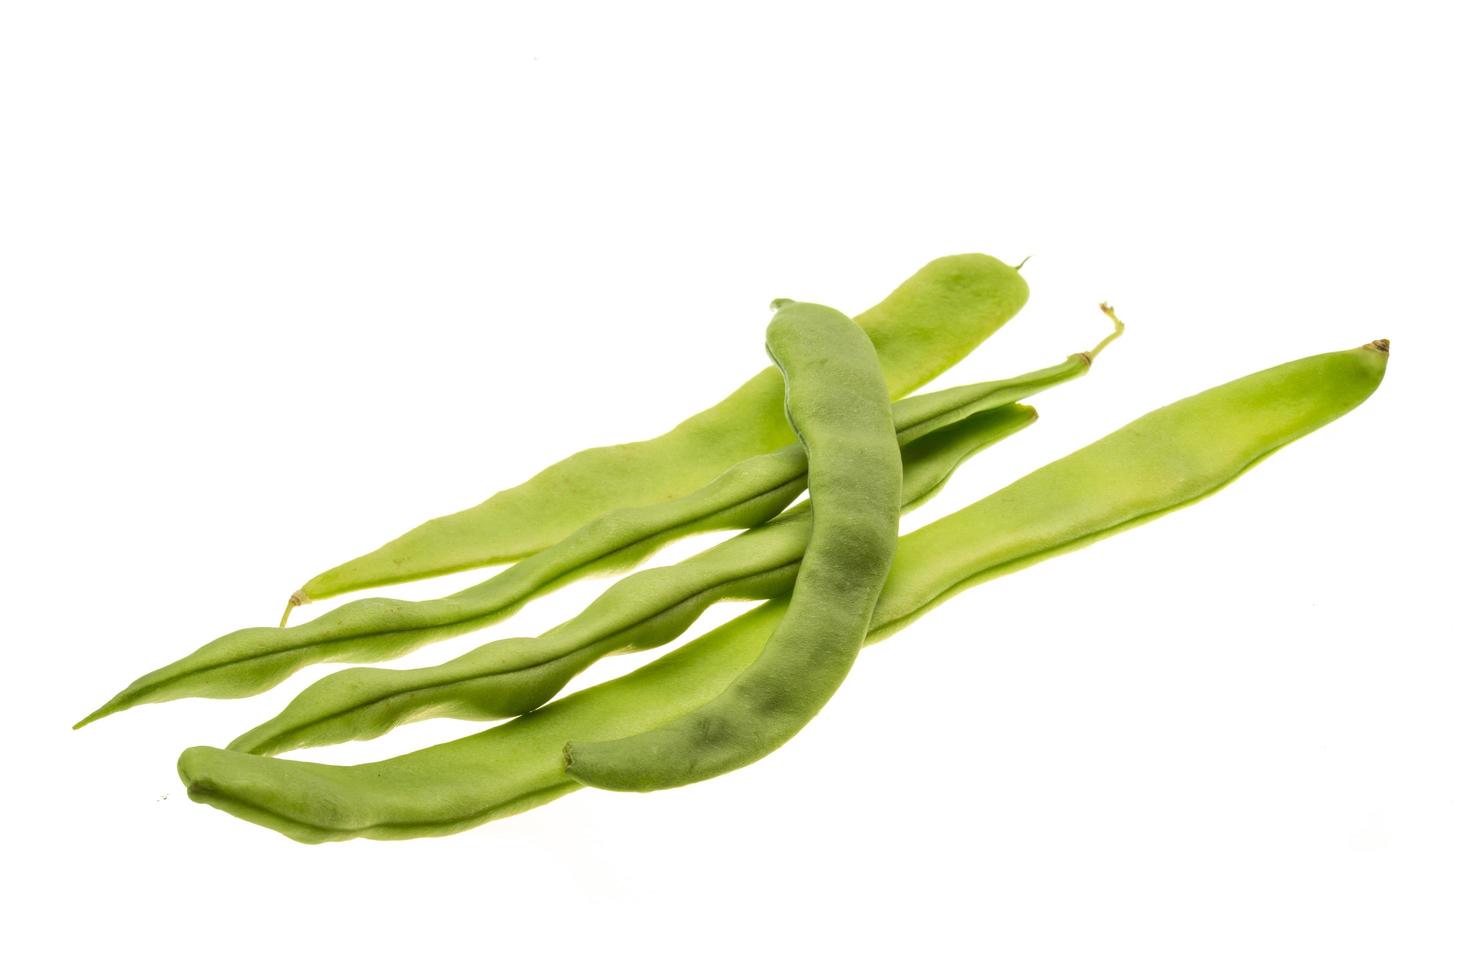 Green bean on white background photo